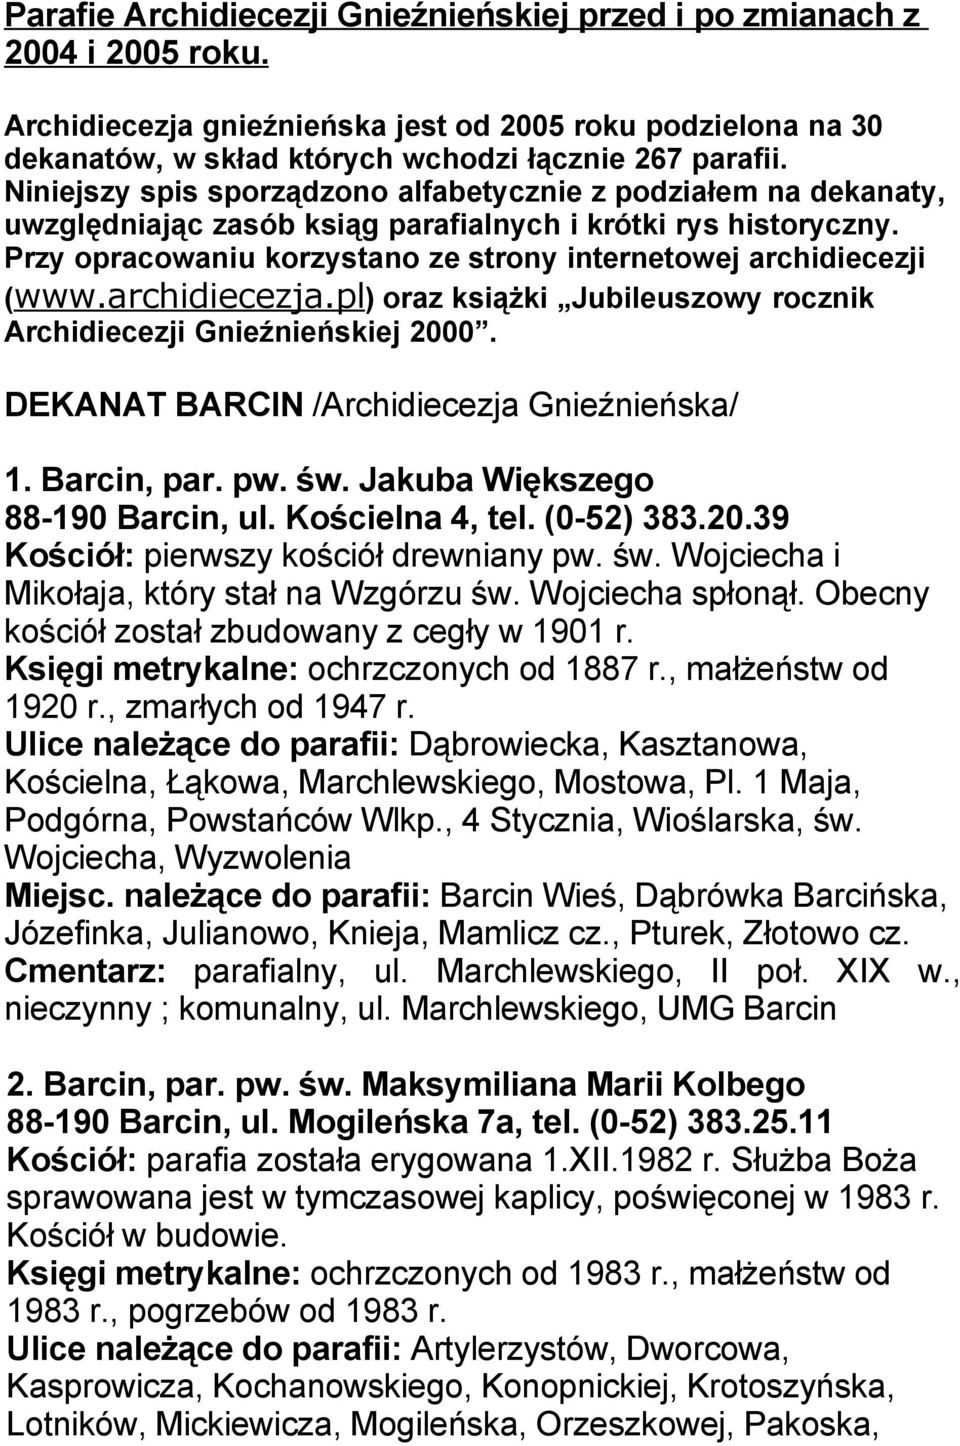 Przy opracowaniu korzystano ze strony internetowej archidiecezji (www.archidiecezja.pl) oraz książki Jubileuszowy rocznik Archidiecezji Gnieźnieńskiej 2000.